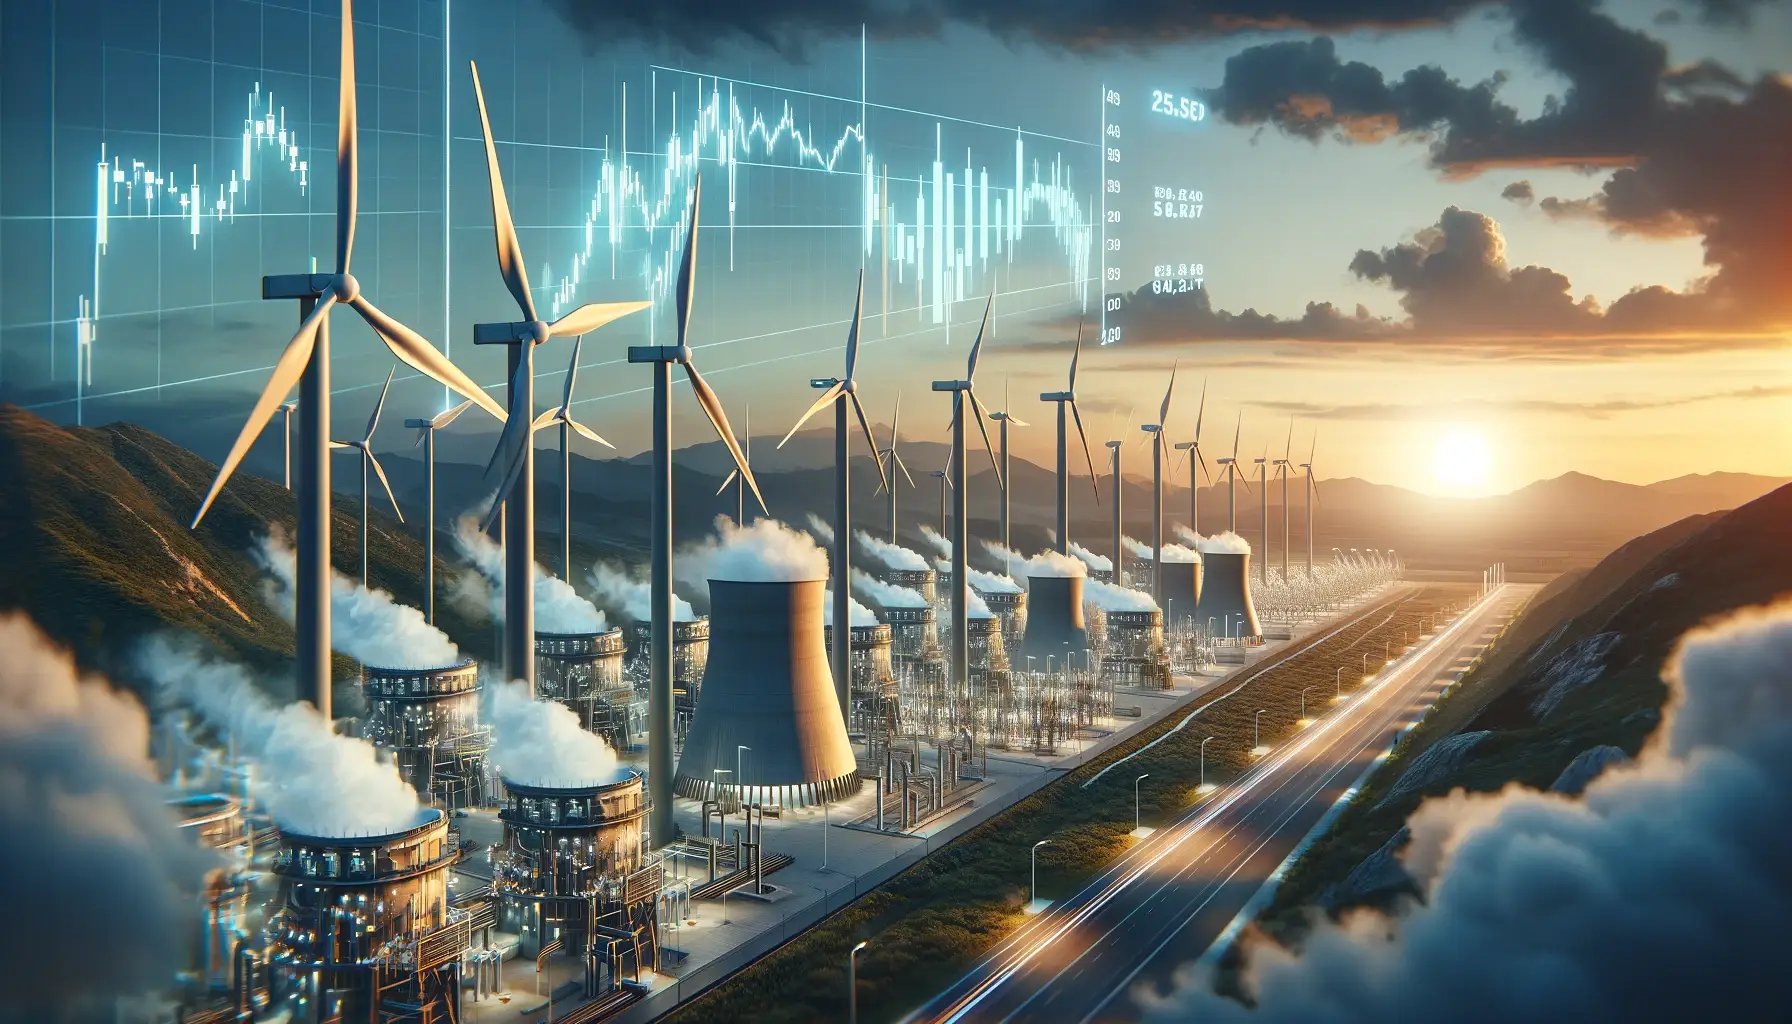 Veröffentliche ein Bild für einen Artikel über die Siemens Energy-Aktie